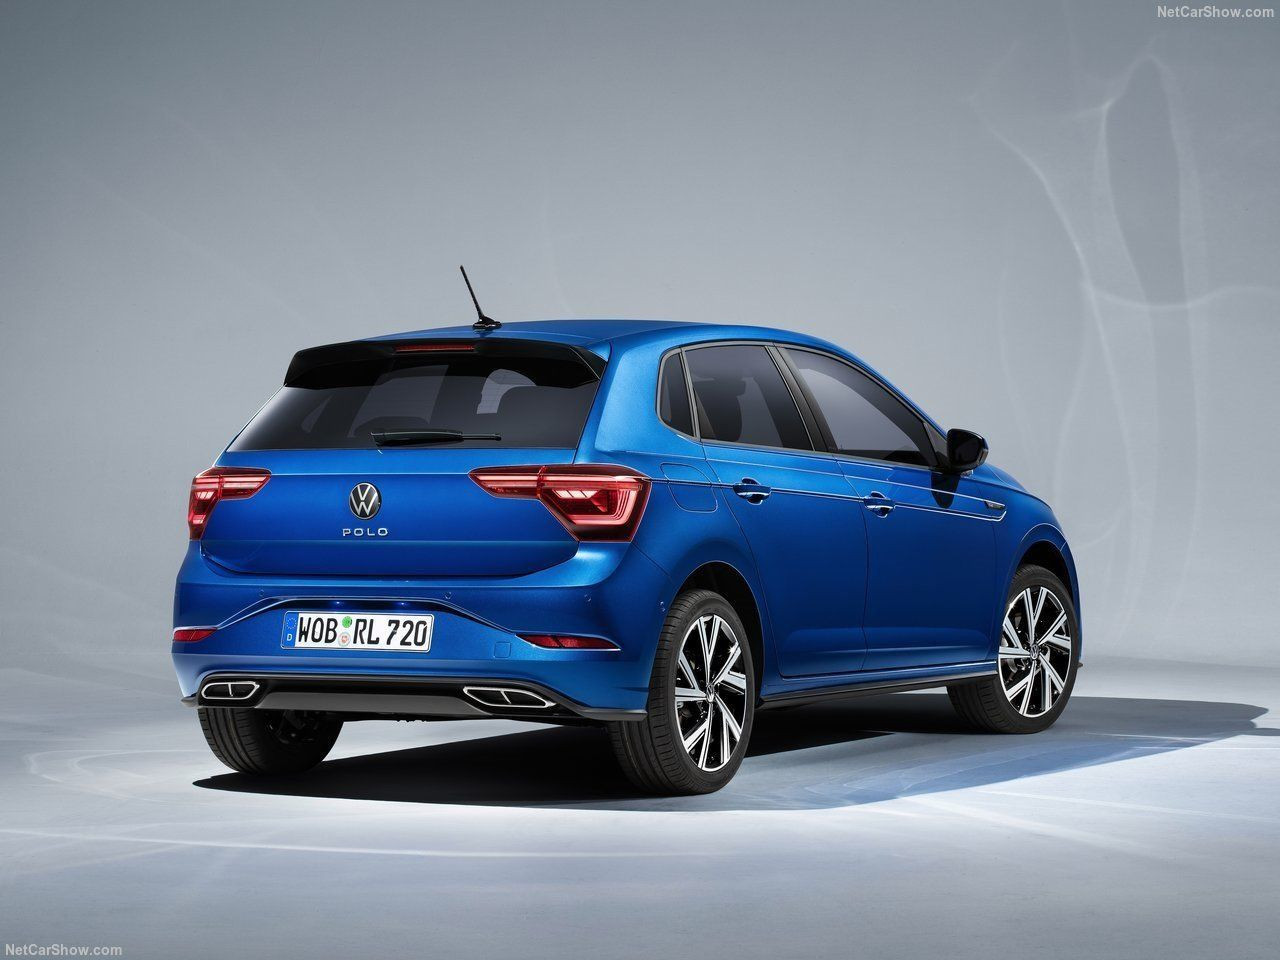 Ulaş Utku Bozdoğan: Volkswagen Polo Mayıs fiyatlarıyla şaşkınlık yarattı! Bu son fırsat olabilir! 1